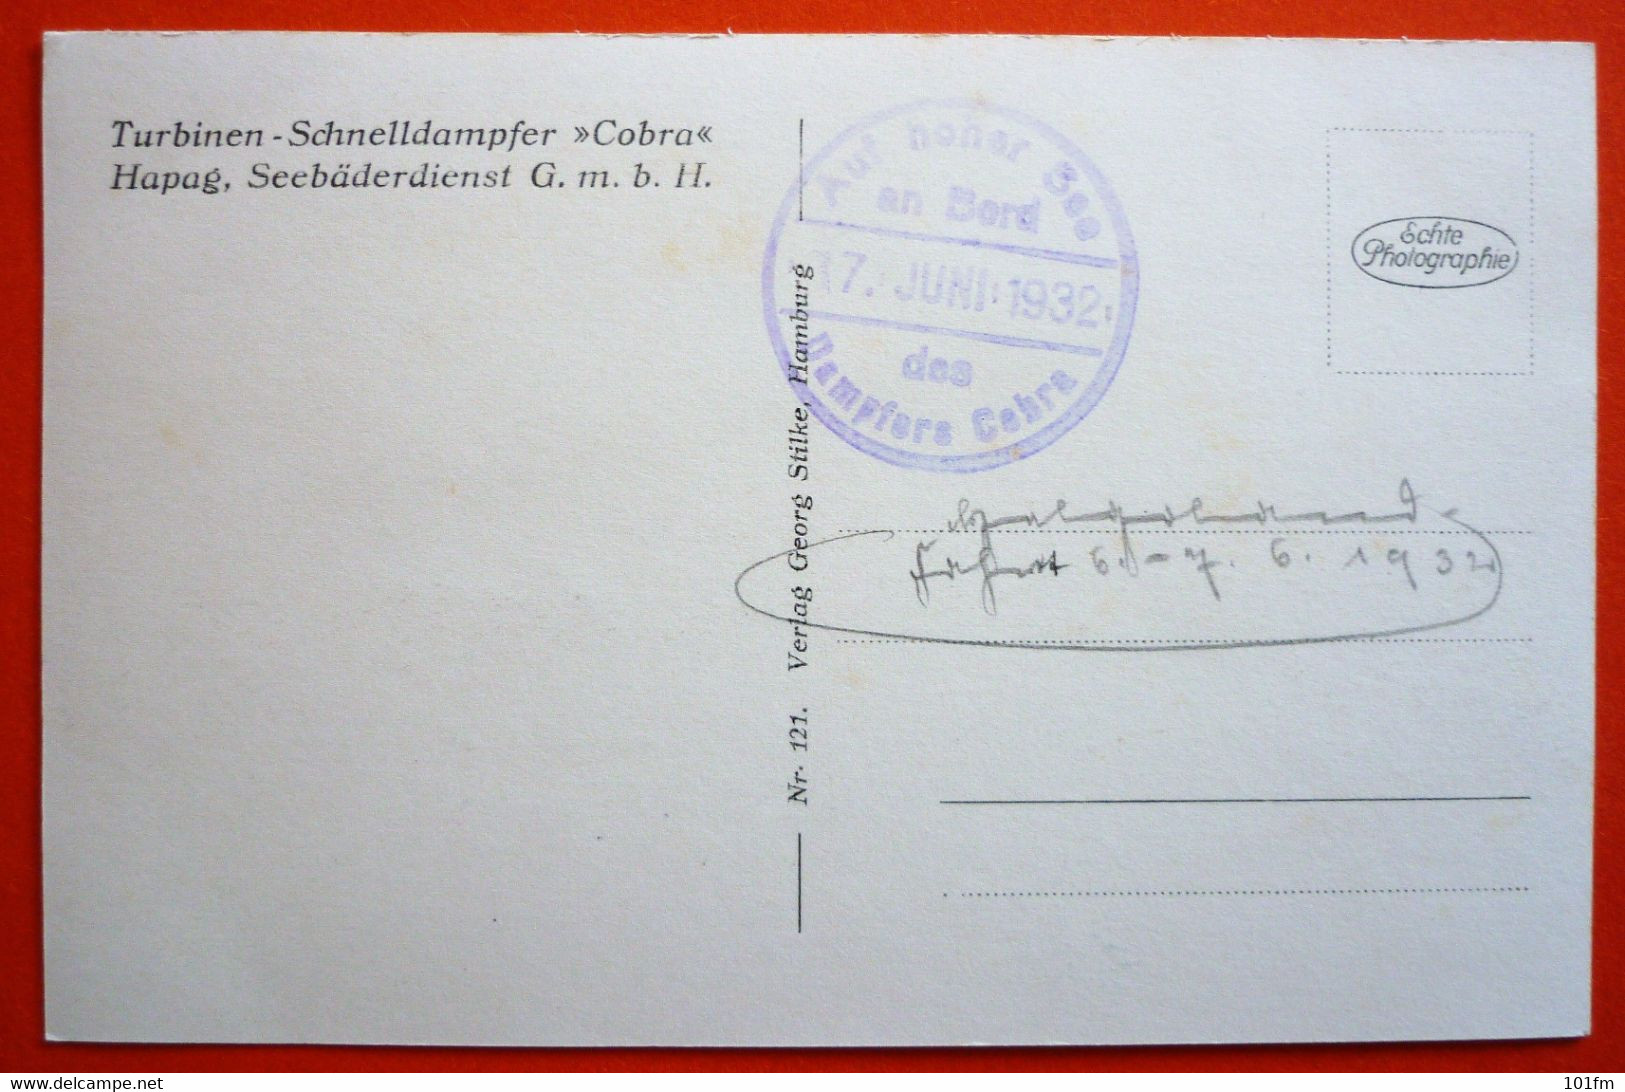 TURBINEN - SCHNELLDAMPFER "COBRA" - AUF HOHER SEE 17.JUNI.1932 - Dampfer